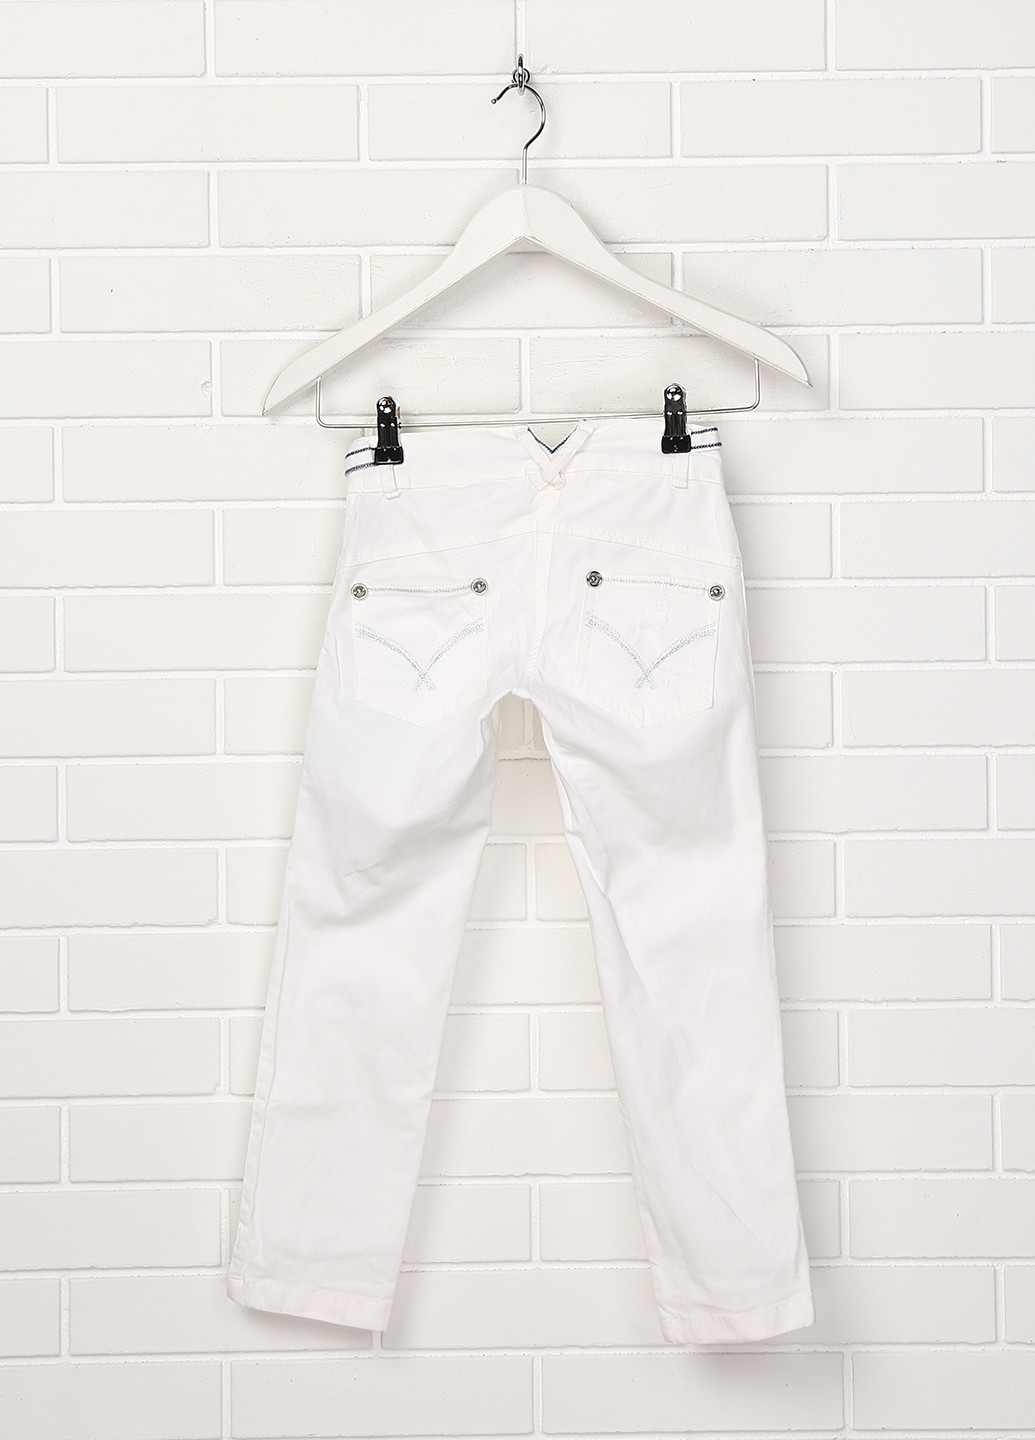 Белые летние джинсы Puledro